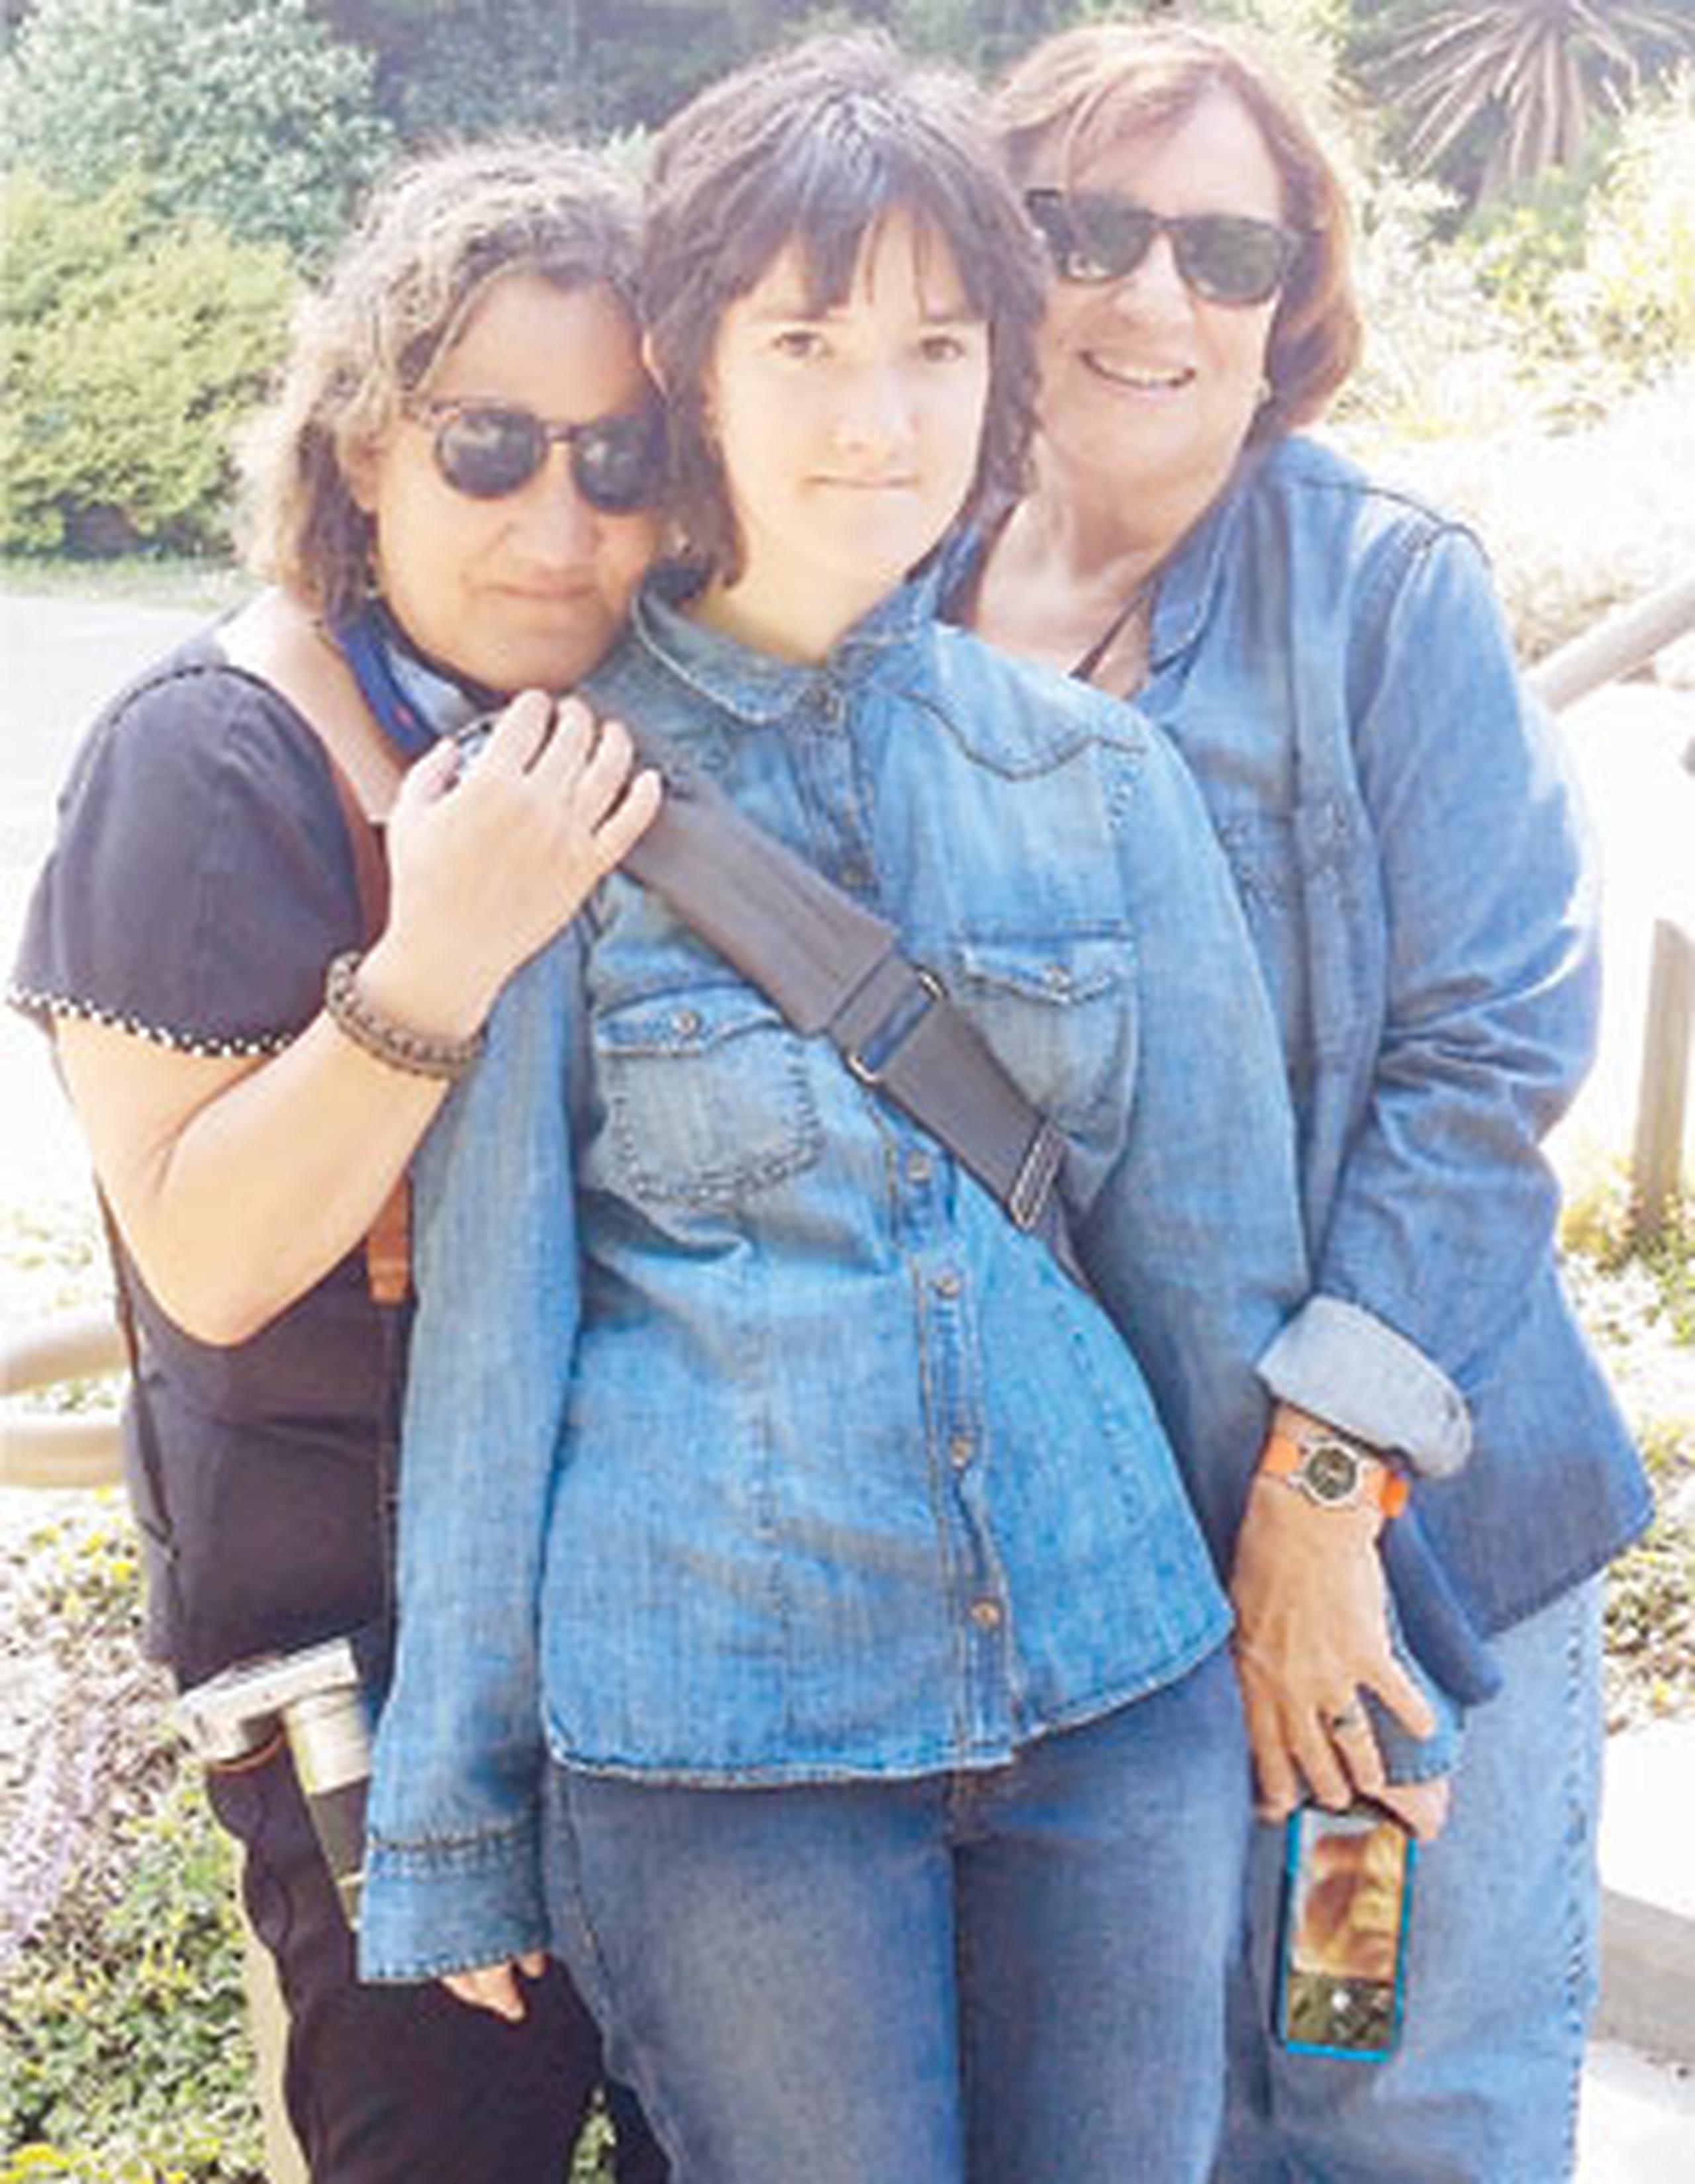 Carmen Milagros Vélez y su esposa Ángeles Acosta esperan concluir el proceso de adopción de su hija Juliana tan cerca como este próximo mes de agosto. (Archivo)